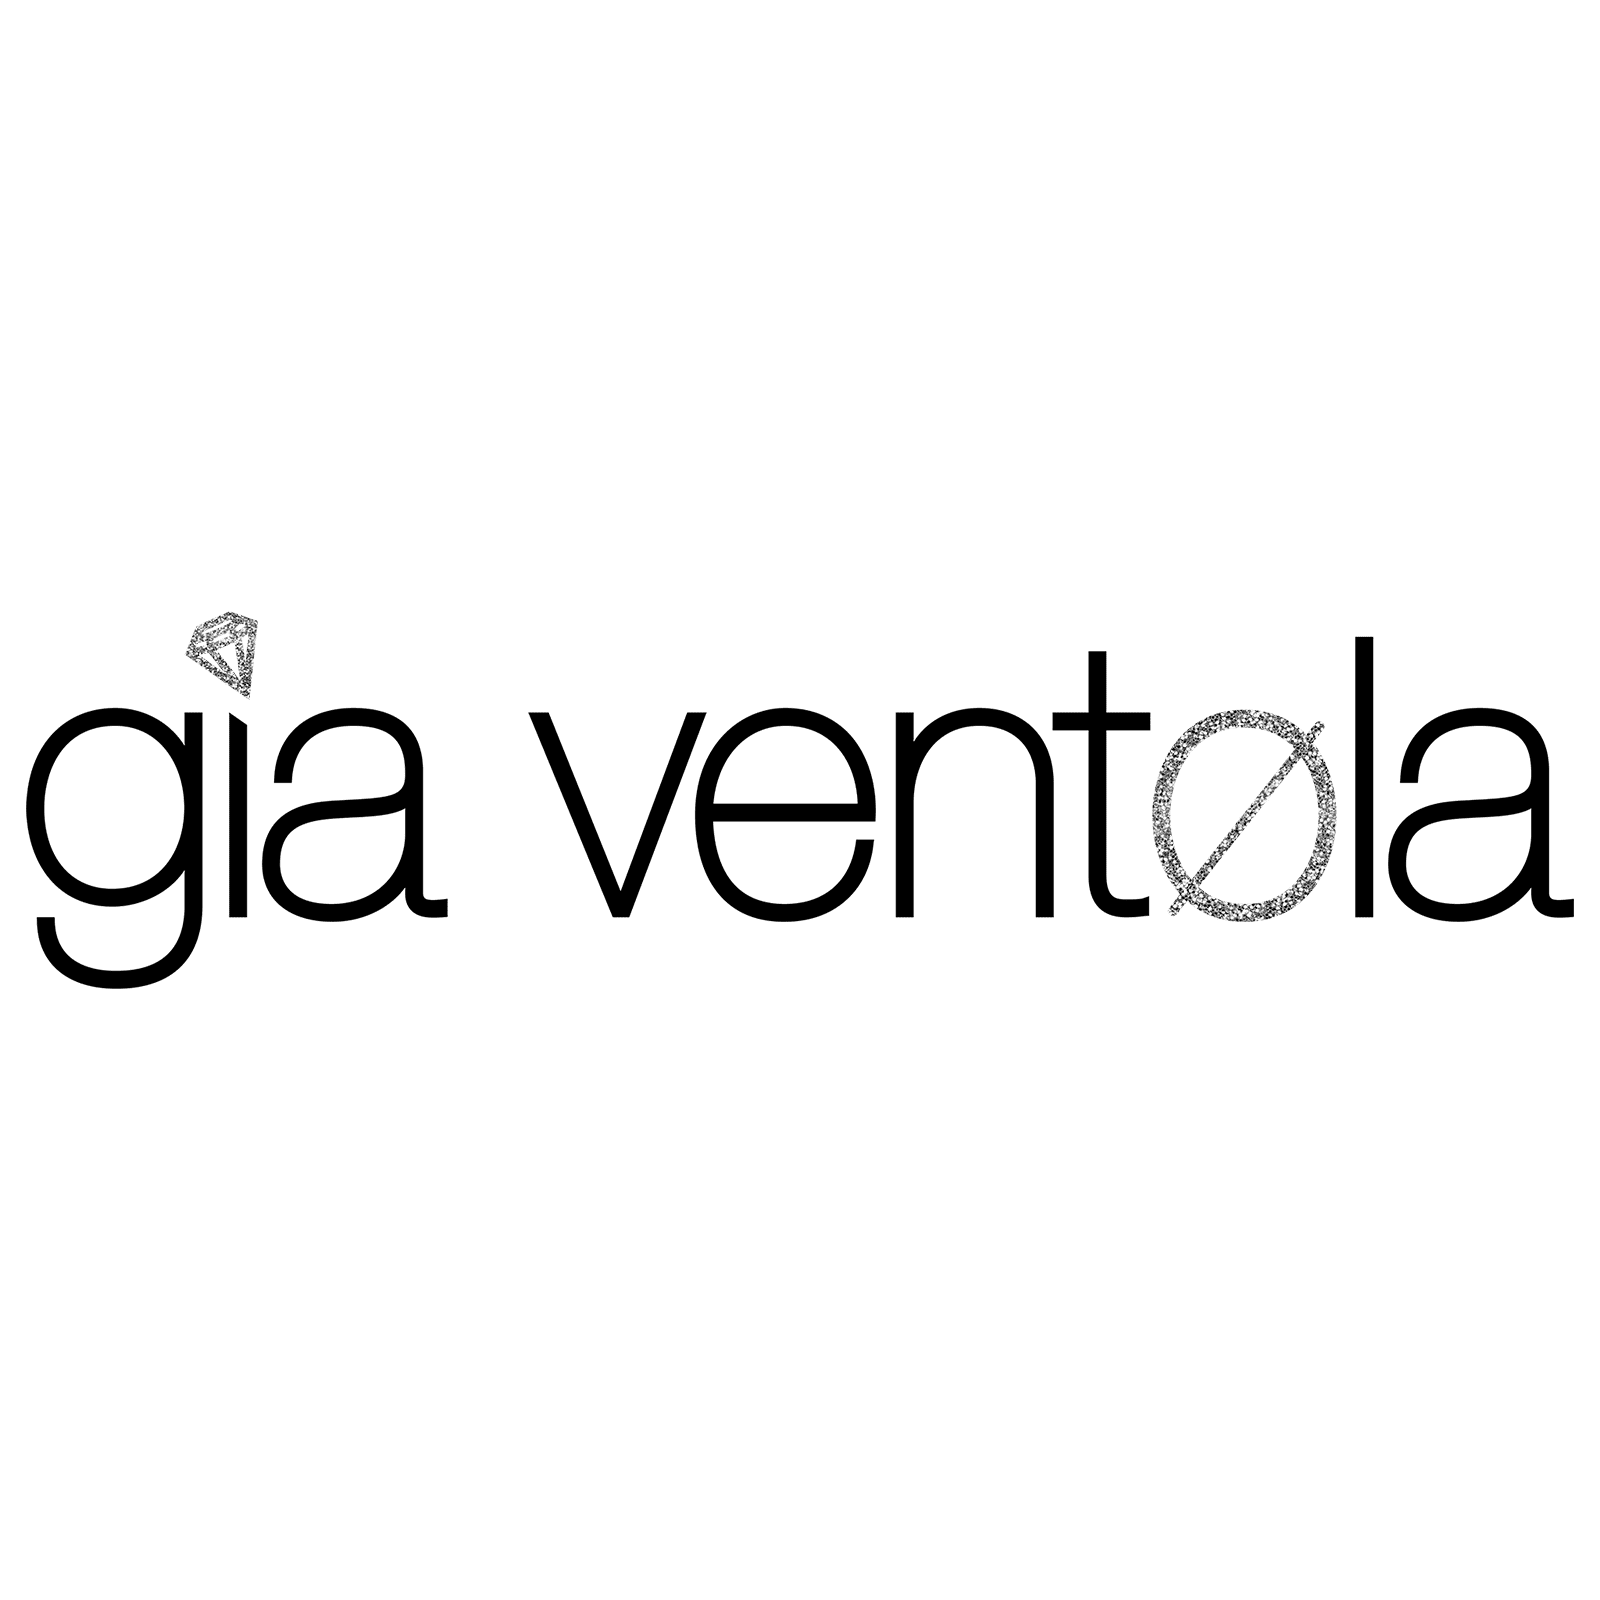 who is gia ventøla?